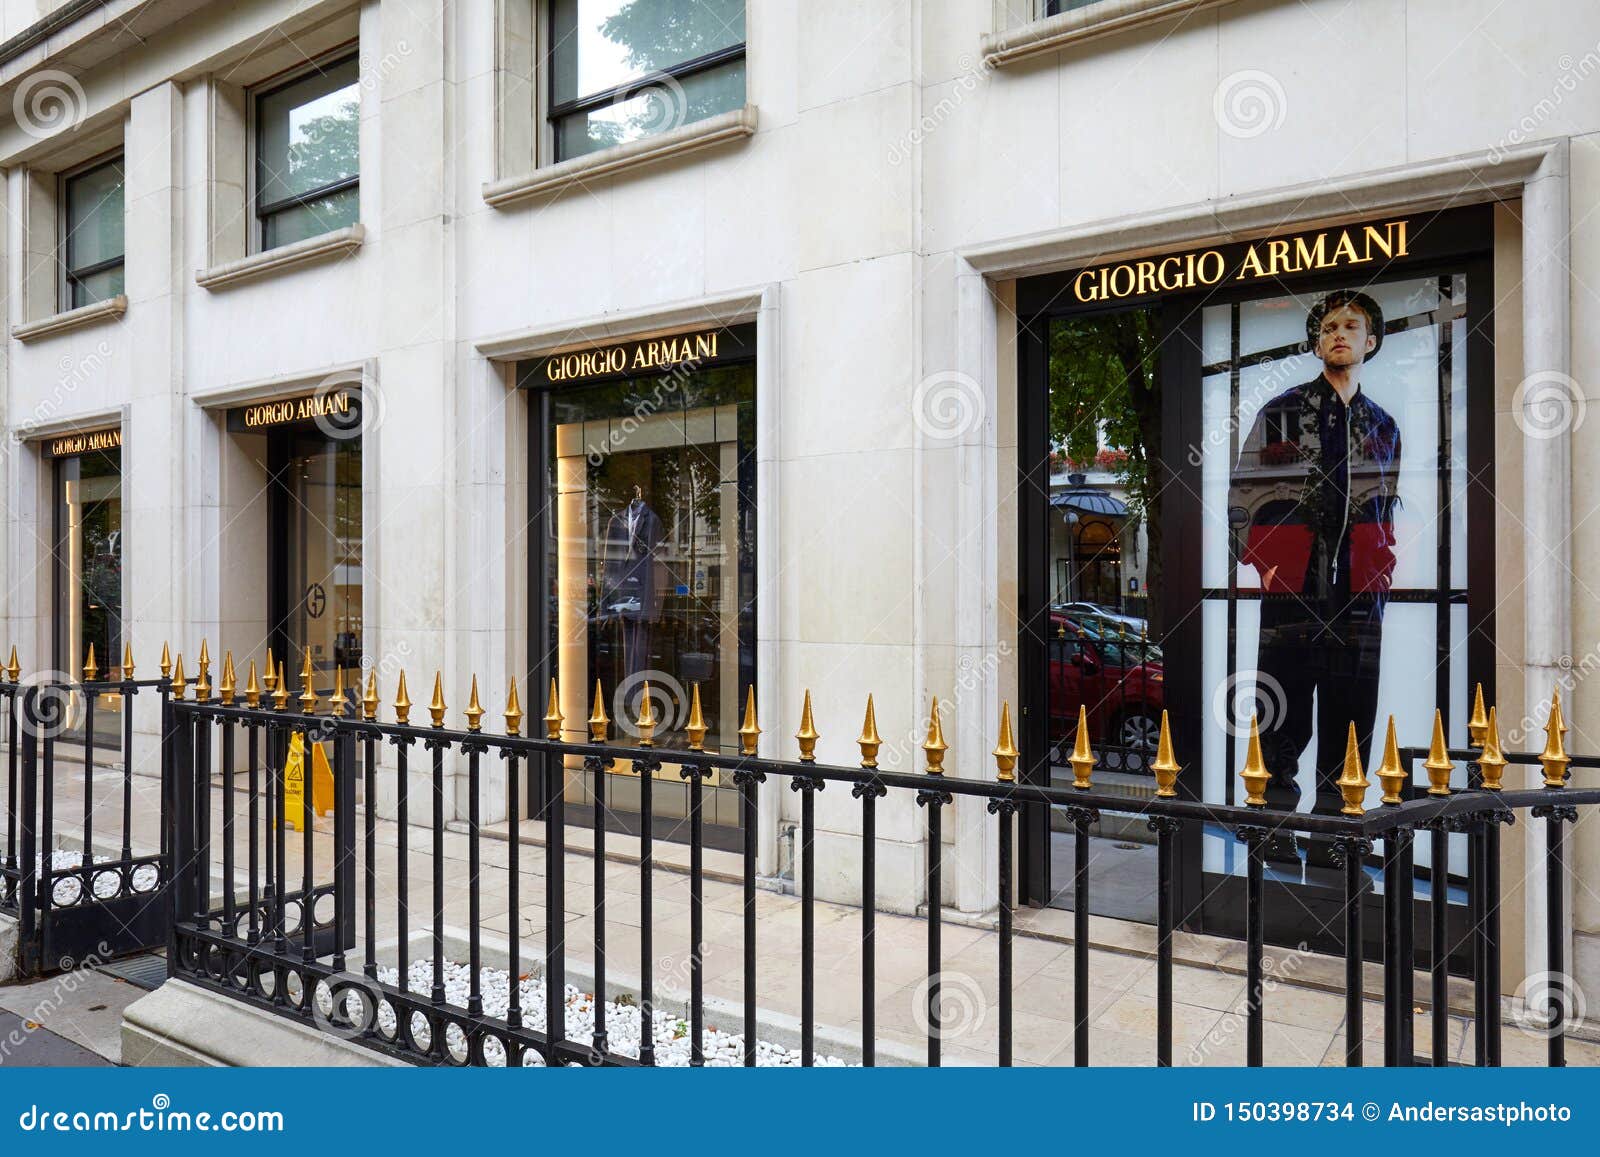 Giorgio Armani fashion luxury store in avenue Montaigne in Paris